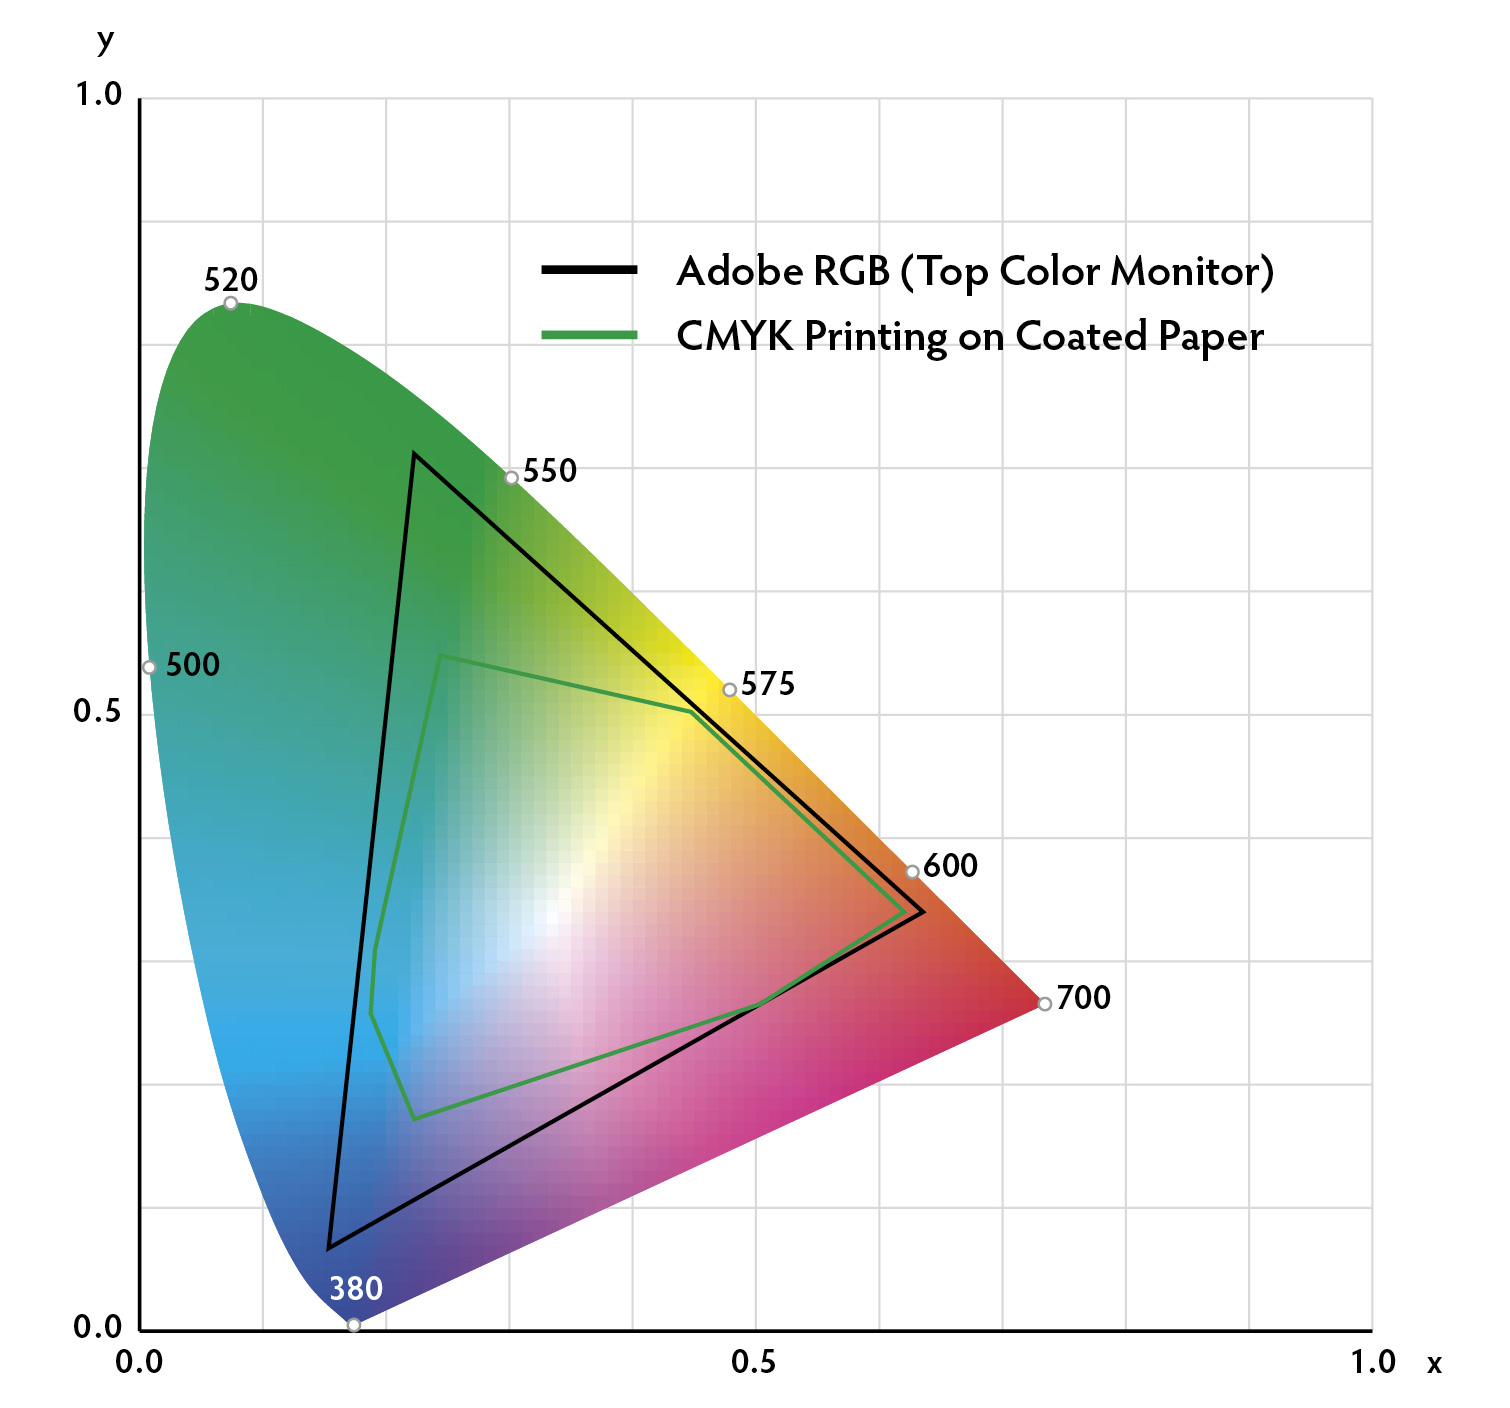 C.I.E. Chromaticity Diagram ถูกทำชึ้นเพื่อแสดงตำแหน่งสีที่ตาของมนุษย์มองเห็น จอคอมพิวเตอร์จะแสดงภาพสีที่เราเห็นได้ไม่ครบถ้วน (ด้งเช่นจอภาพ แสดงสีด้วย Adobe RGB) ยิ่งกว่านั้น สีหมึกพิมพื CMYK ที่ใช้กันทั่วไปในงานพิมพ์ลงบนกระดาษ หรือผืนผ้า ก็ยิ่งมีข้อจำกัดในความสดของสี สีของทับทิม และซัฟไฟร์ที่สดจัด ไม่สามารถถ่ายทอดออกมาได้นี้ เรียกว่า out of gamut ดังนั้นเราจึงควรประเมินคุณภาพสีอัญณีด้วยการตรวจดูด้วยตาตนเอง ไม่ใช่จากรูปภาพ คลิกที่ภาพเพื่อขยายขนาด